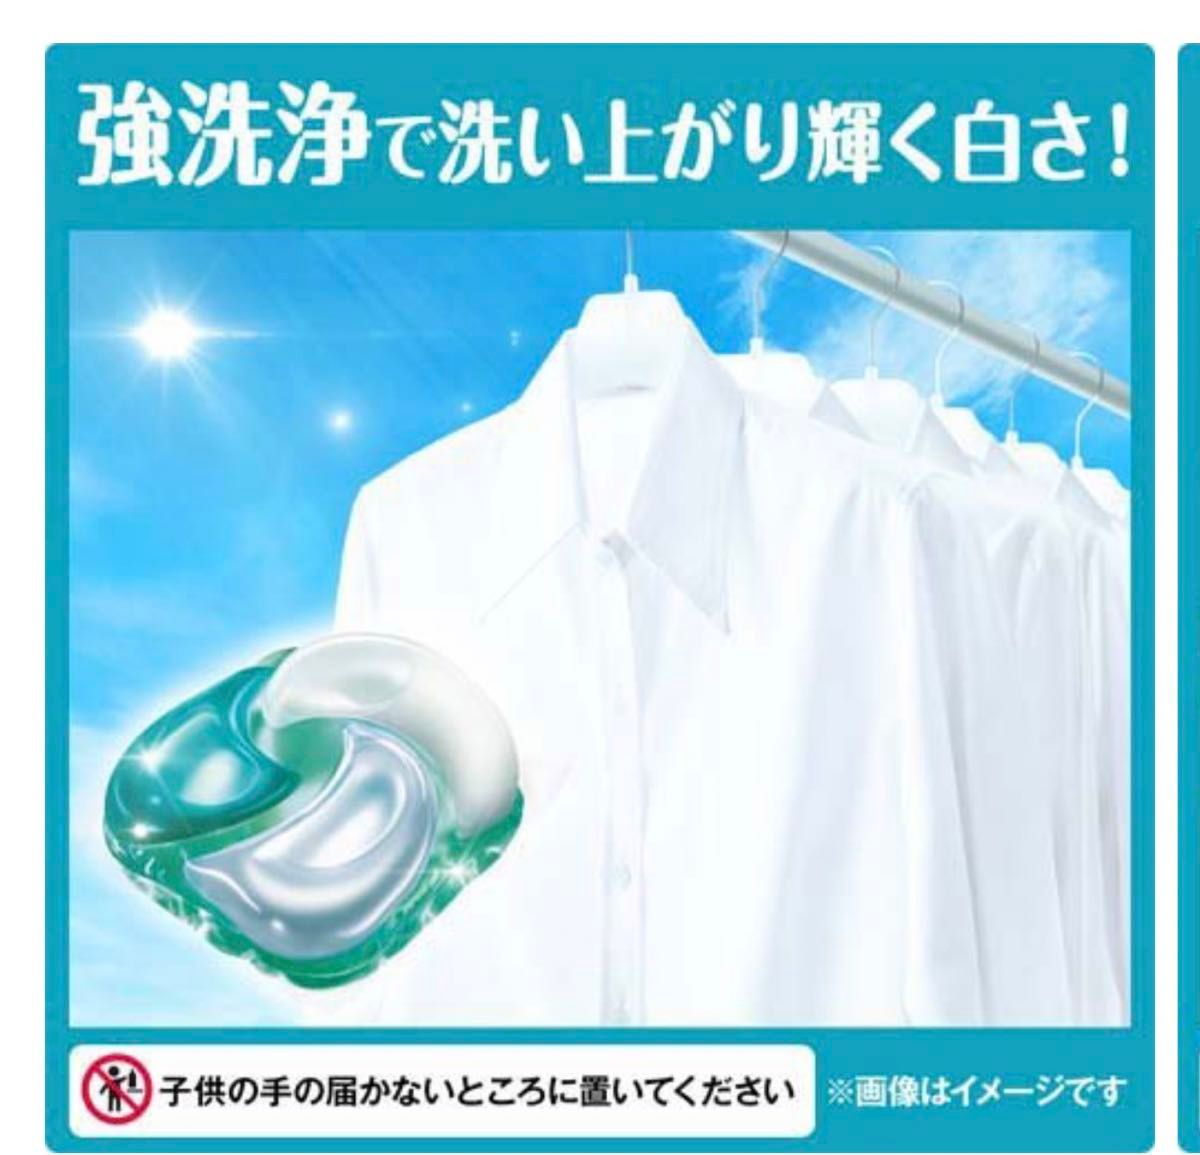 ボールド 洗濯洗剤 ジェルボール4D フレッシュフラワーサボン 詰替 36個×22袋